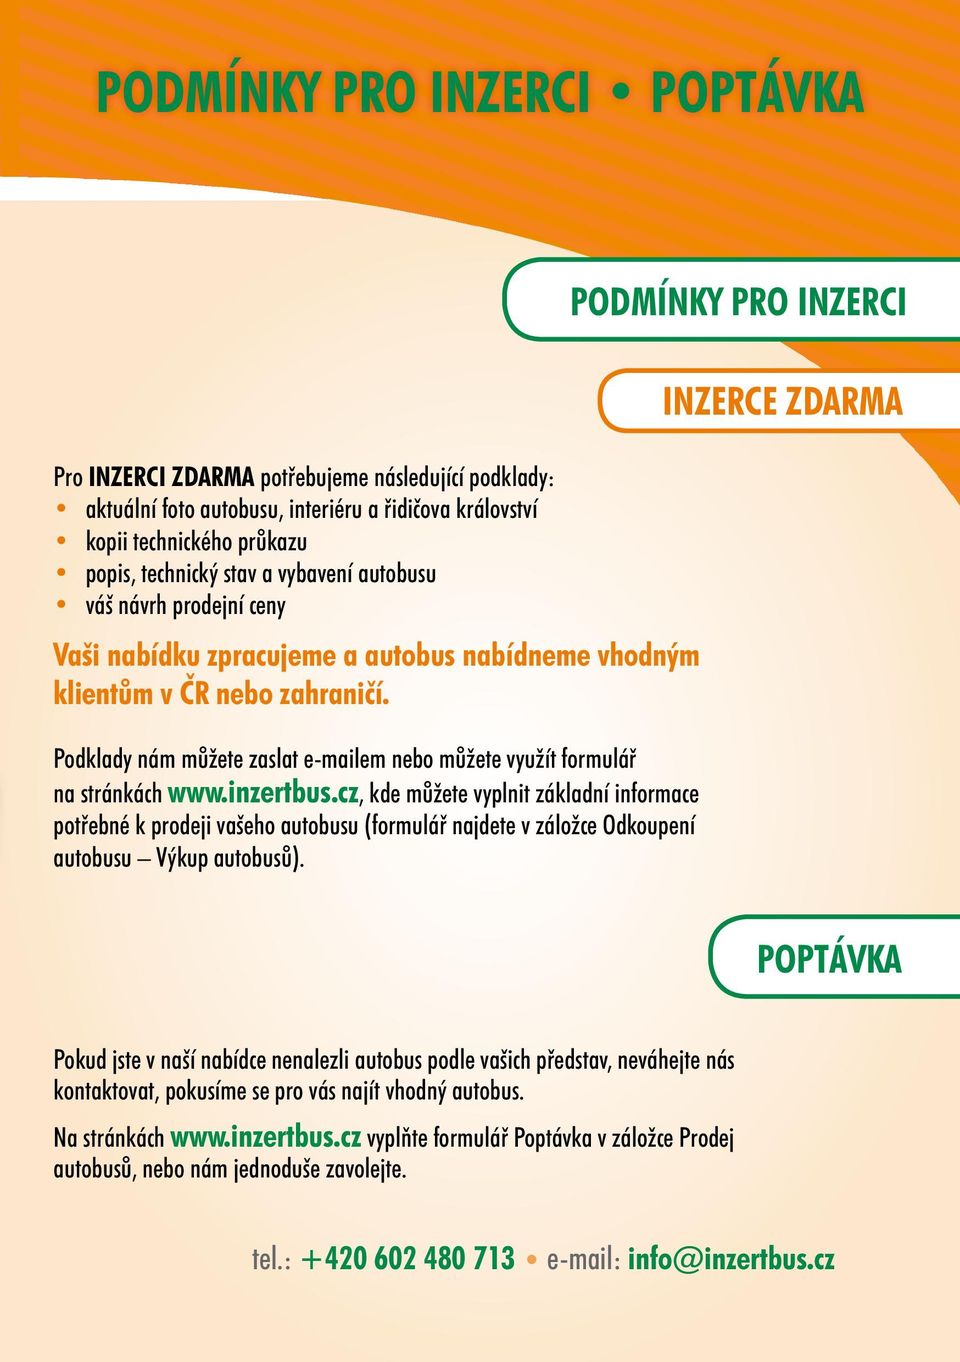 inzertbus.cz, kde můžete vyplnit základní informace potřebné k prodeji vašeho autobusu (formulář najdete v záložce Odkoupení autobusu Výkup autobusů).